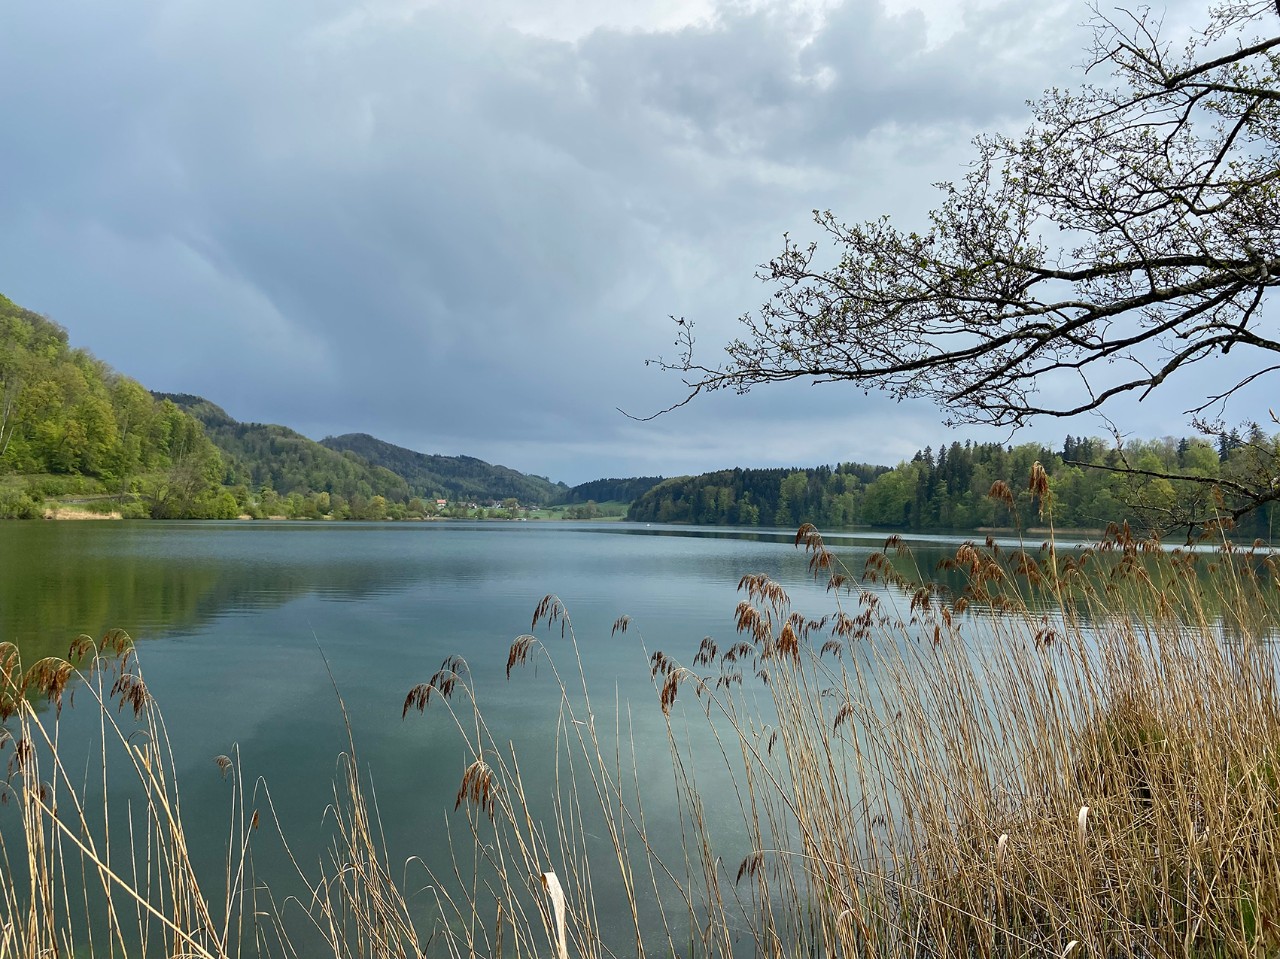 Le parcours comprenait le tour du lac de Türlen dans le Säuliamt zurichois